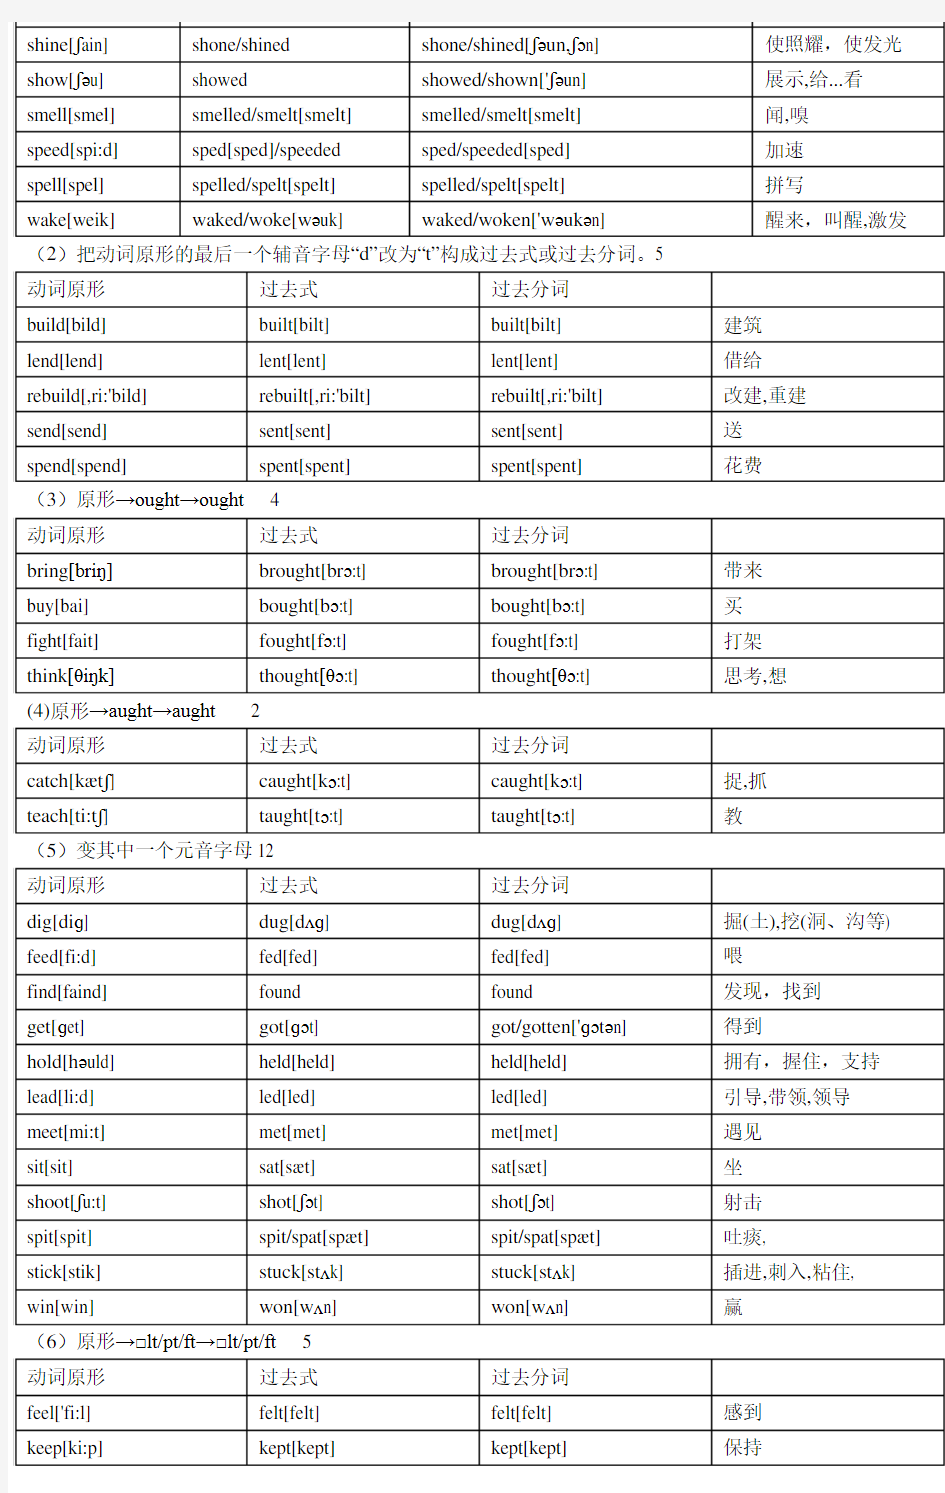 英语动词变化规律、发音及不规则动词表(附音标)